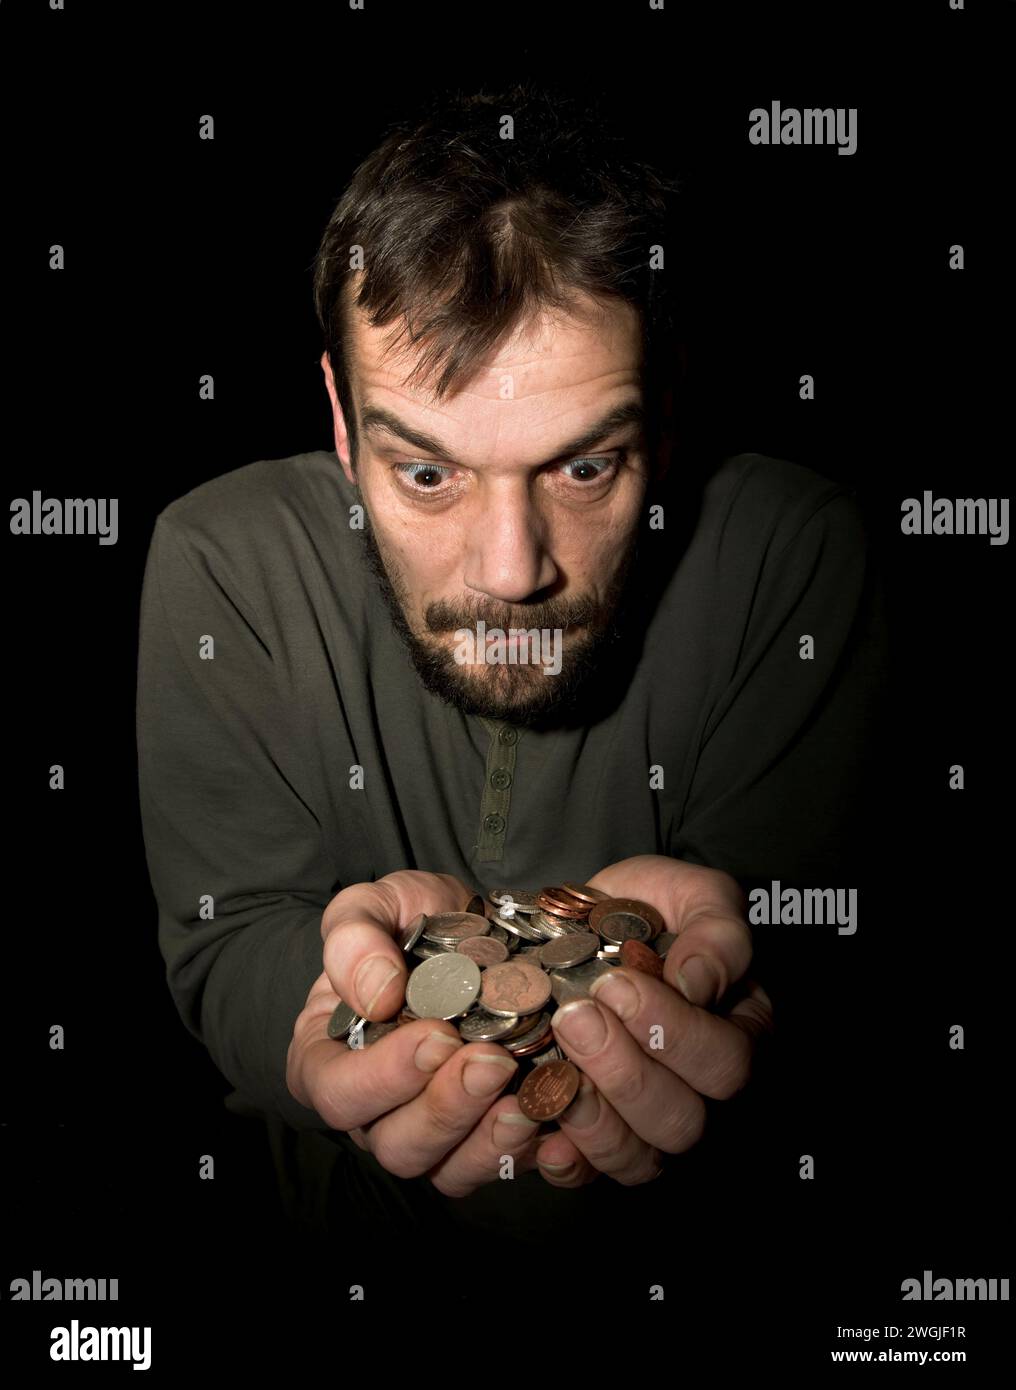 Maschio caucasico (42 anni) con le mani tenute fuori pieno di cambio libero in valuta sterlina con sguardo avido sul viso Foto Stock